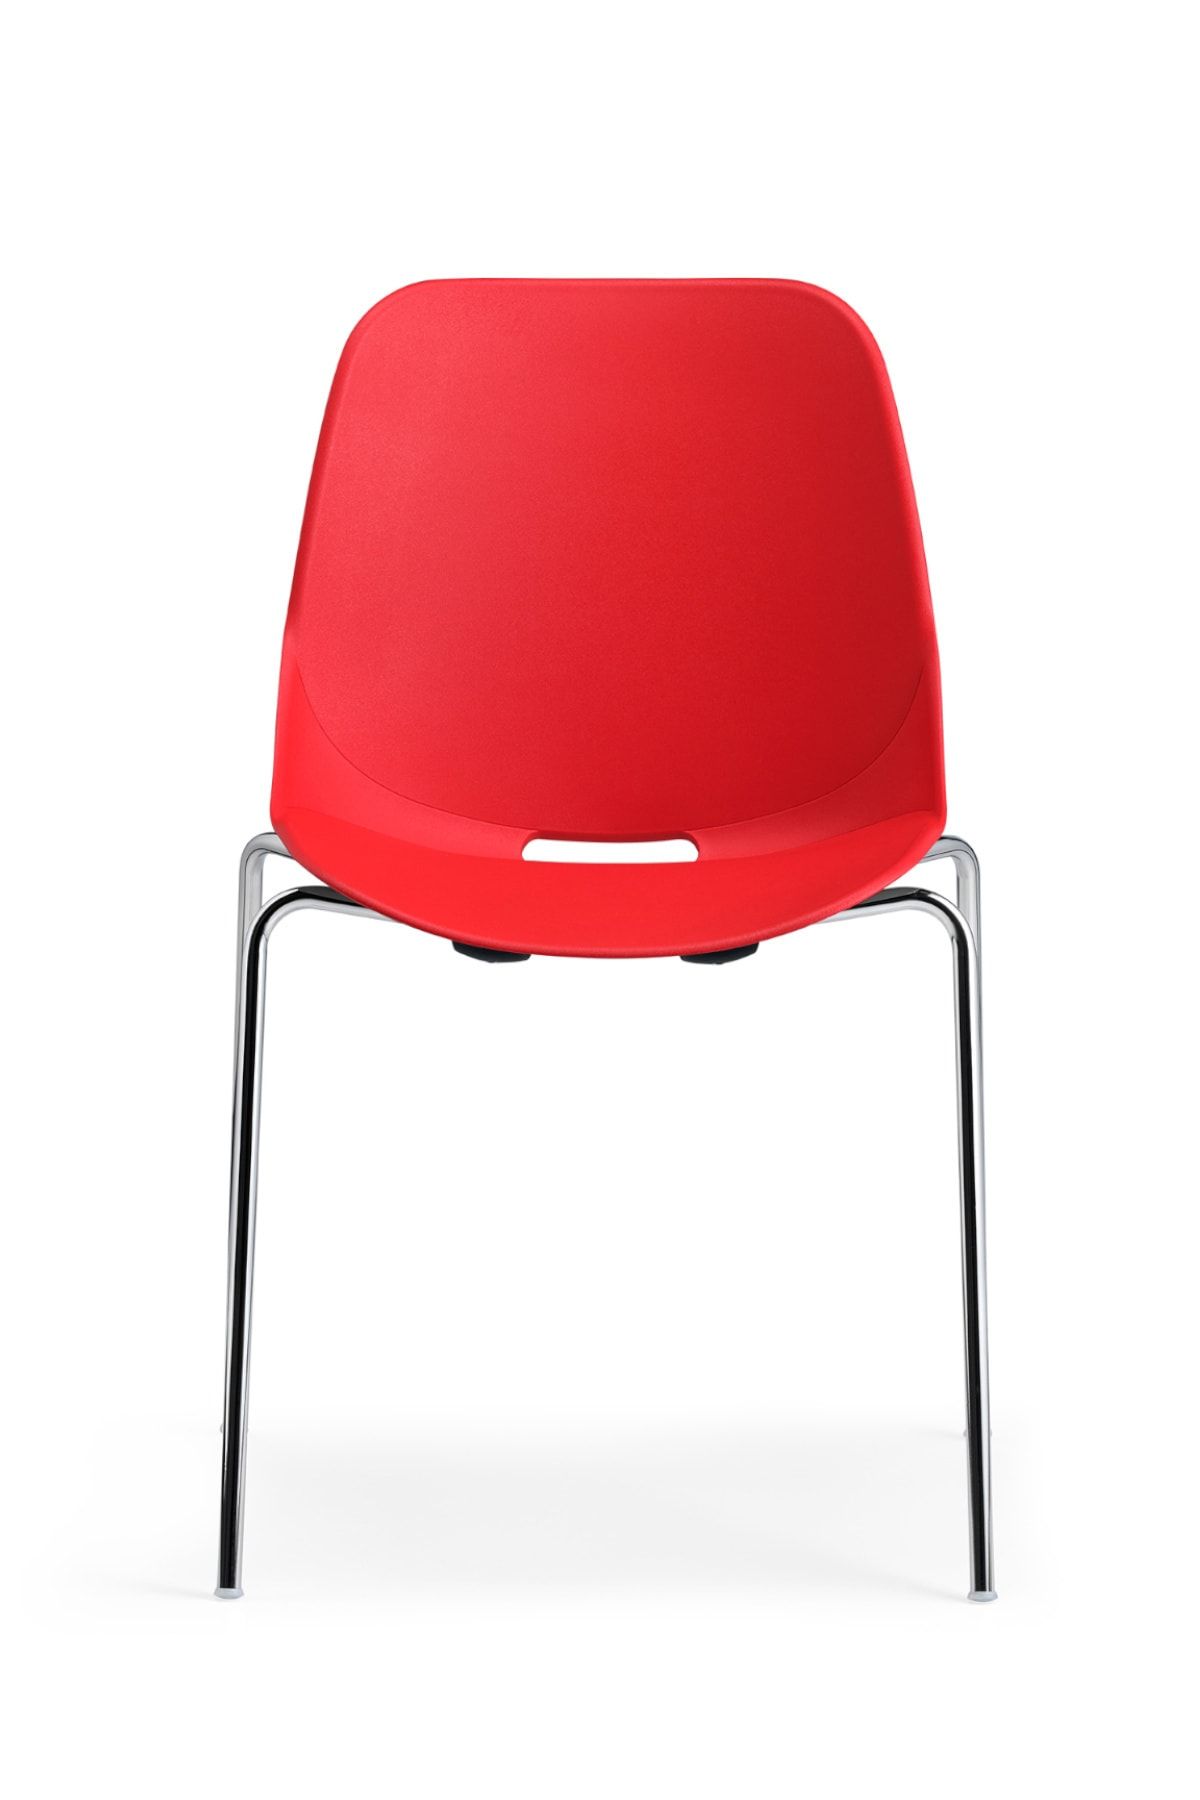 Bürotime Quick Sandalye | Krom Ayak -kırmızı